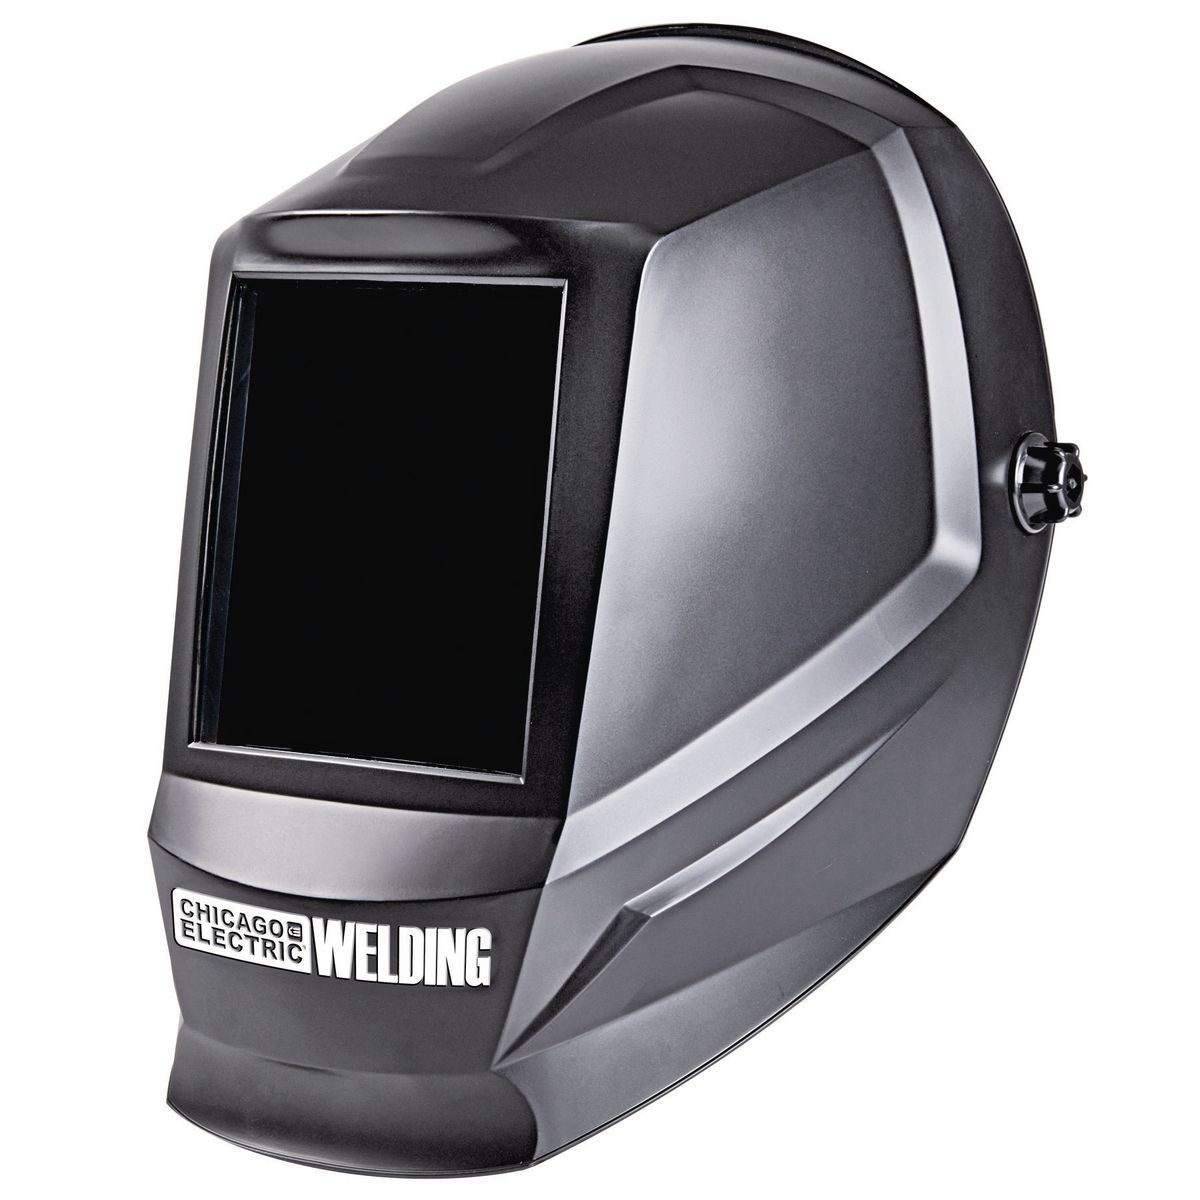 CHICAGO ELECTRIC WELDING Fixed Shade Welding Helmet